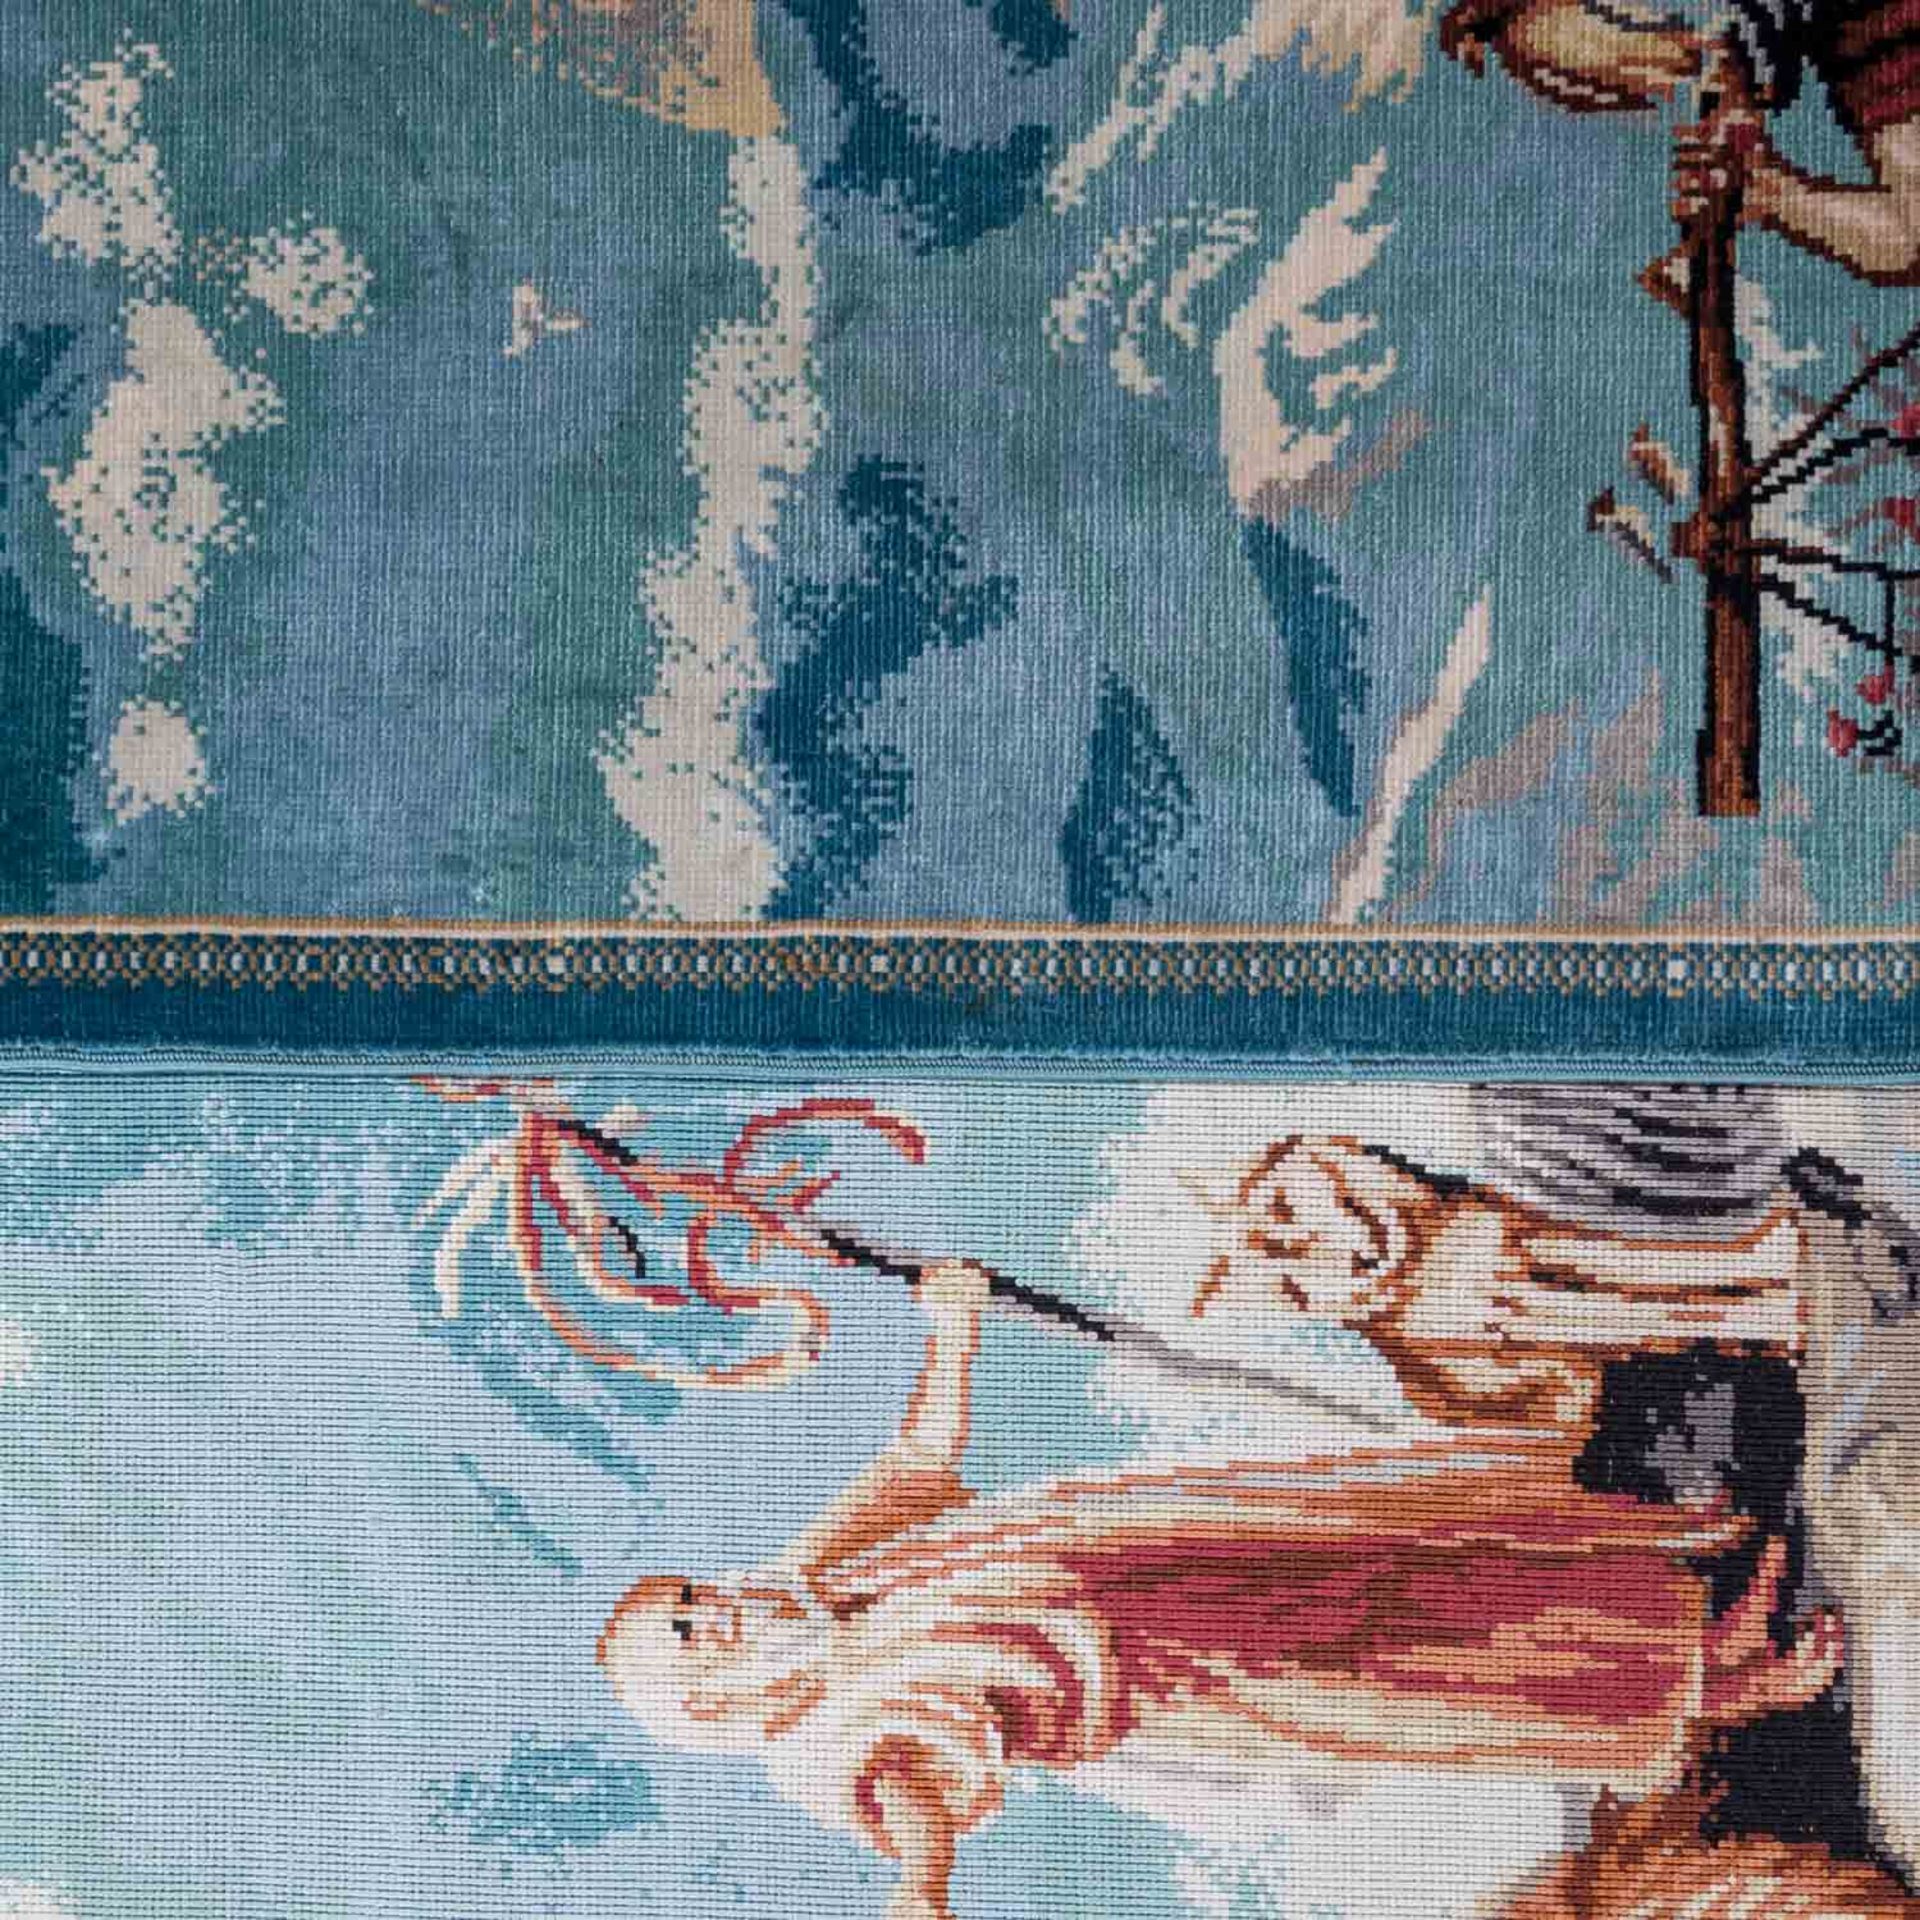 Bildteppich "Arche Noah" aus Seide. HEREKE/TÜRKEI, 20. Jh., 40x63 cm. - Bild 5 aus 6